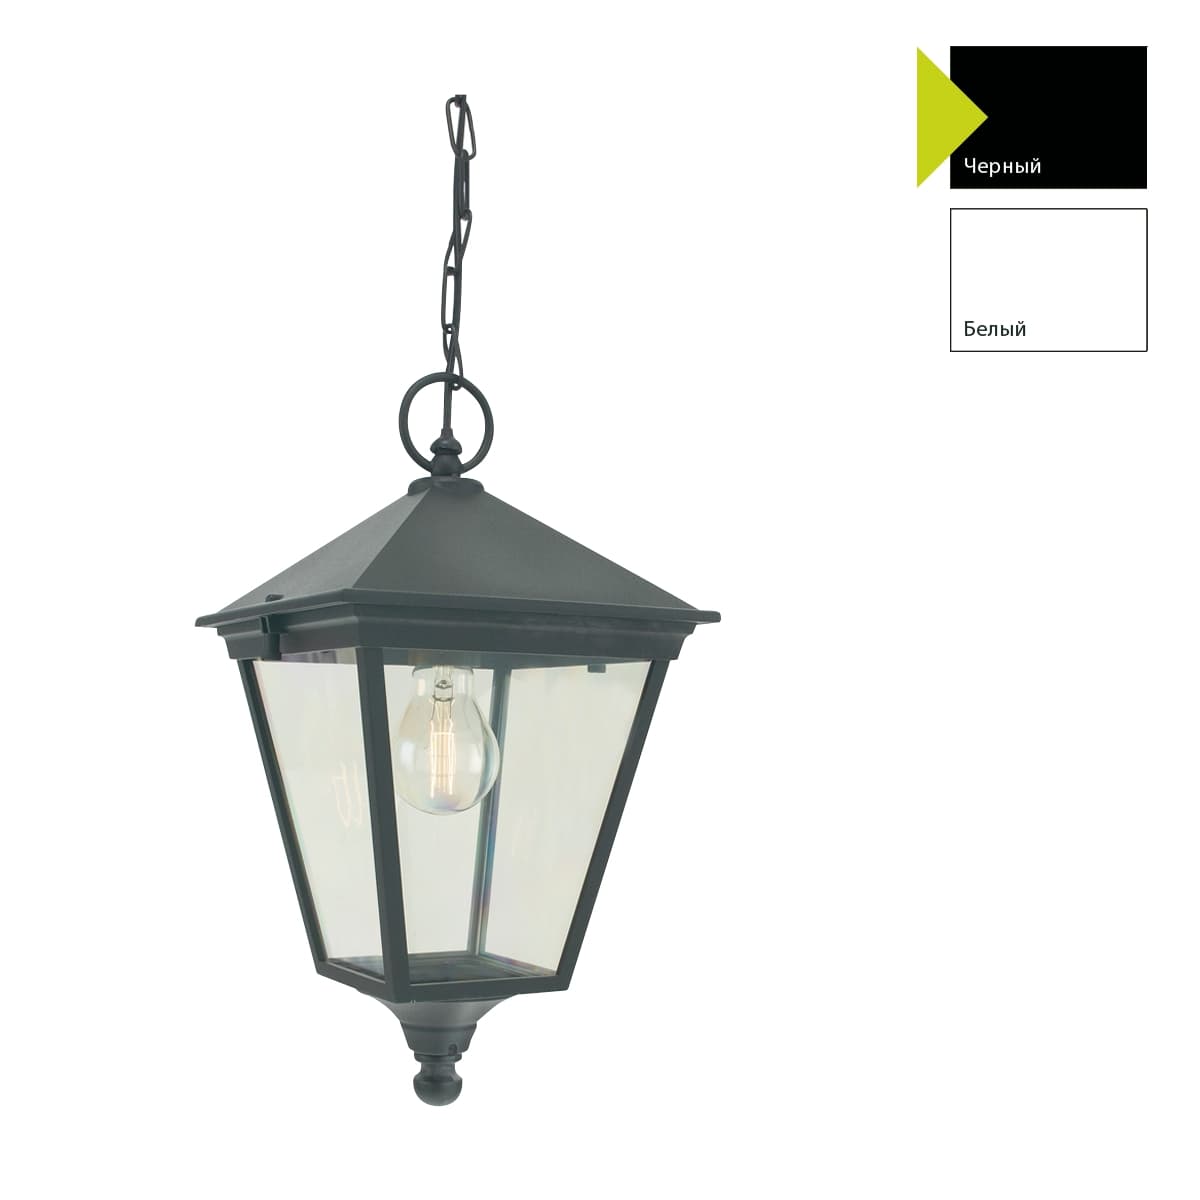 Уличный подвесной светильник Norlys LONDON BIG 493A/B, цвет черный